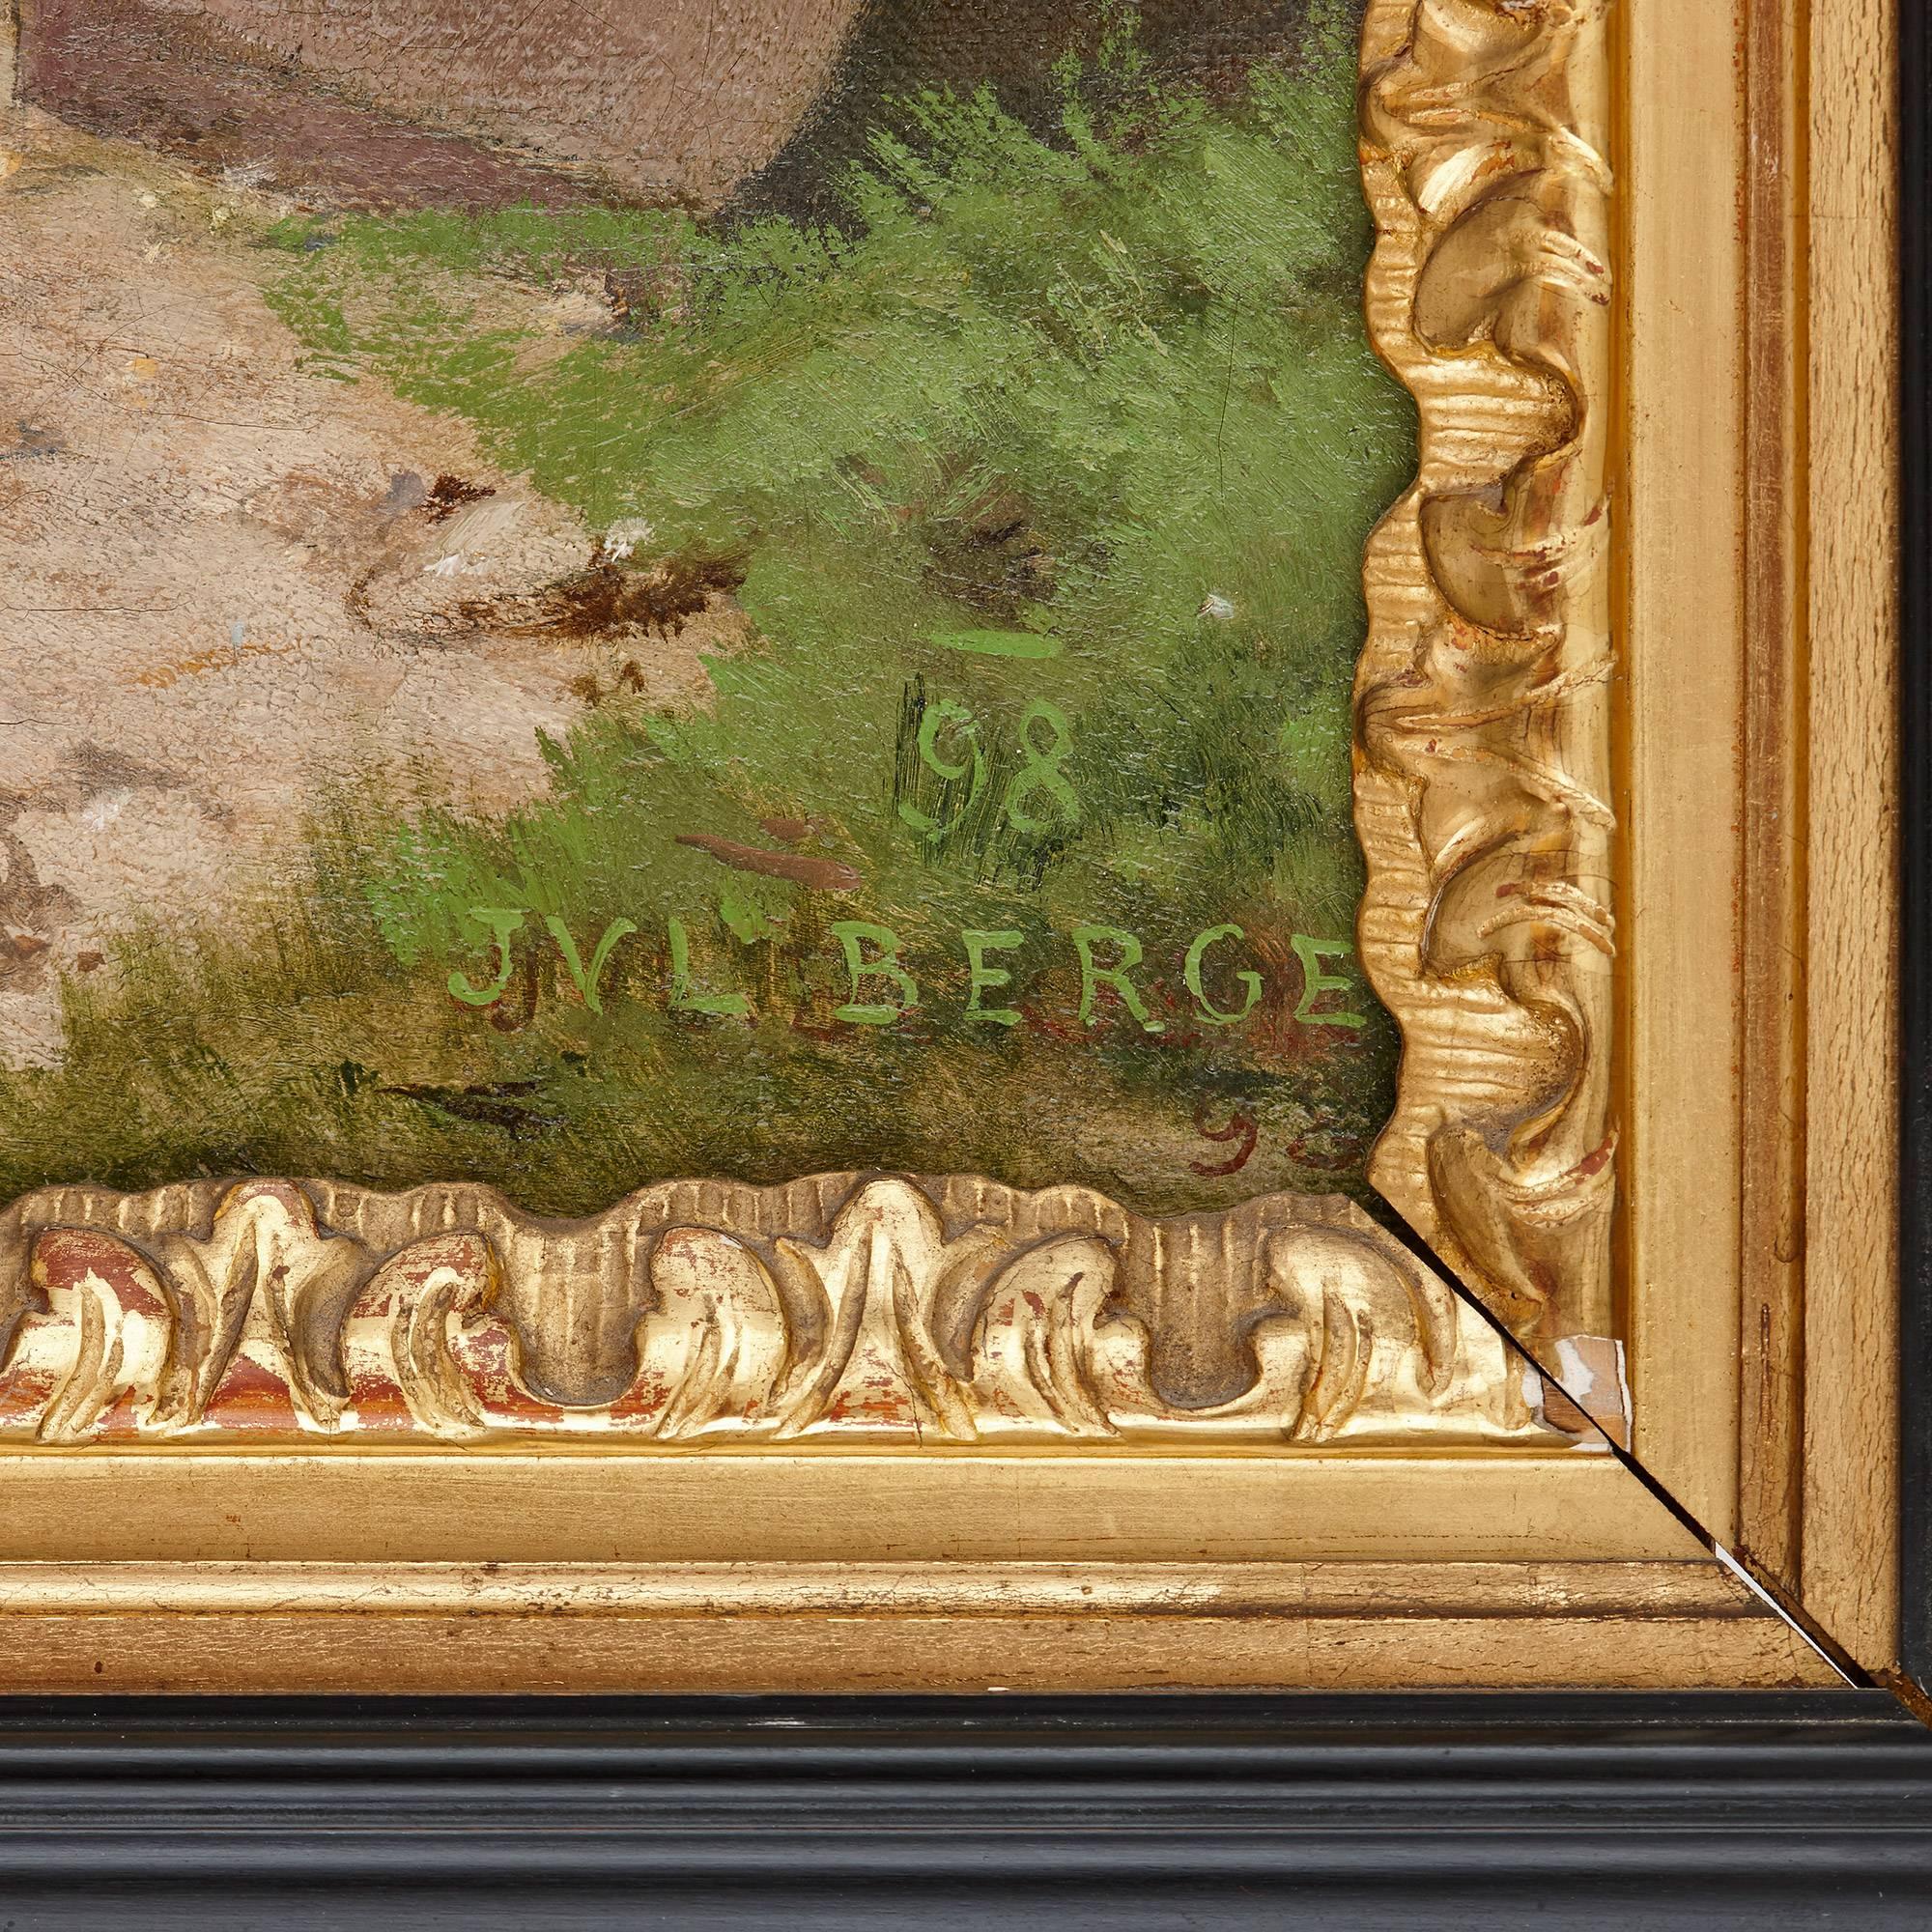 Présentée dans un cadre en bois doré et ébène:: cette belle peinture à l'huile ancienne du XIXe siècle est typique du style raffiné de Berger:: célèbre pour son approche romantique de la peinture de genre. 

L'œuvre représente une scène d'amour